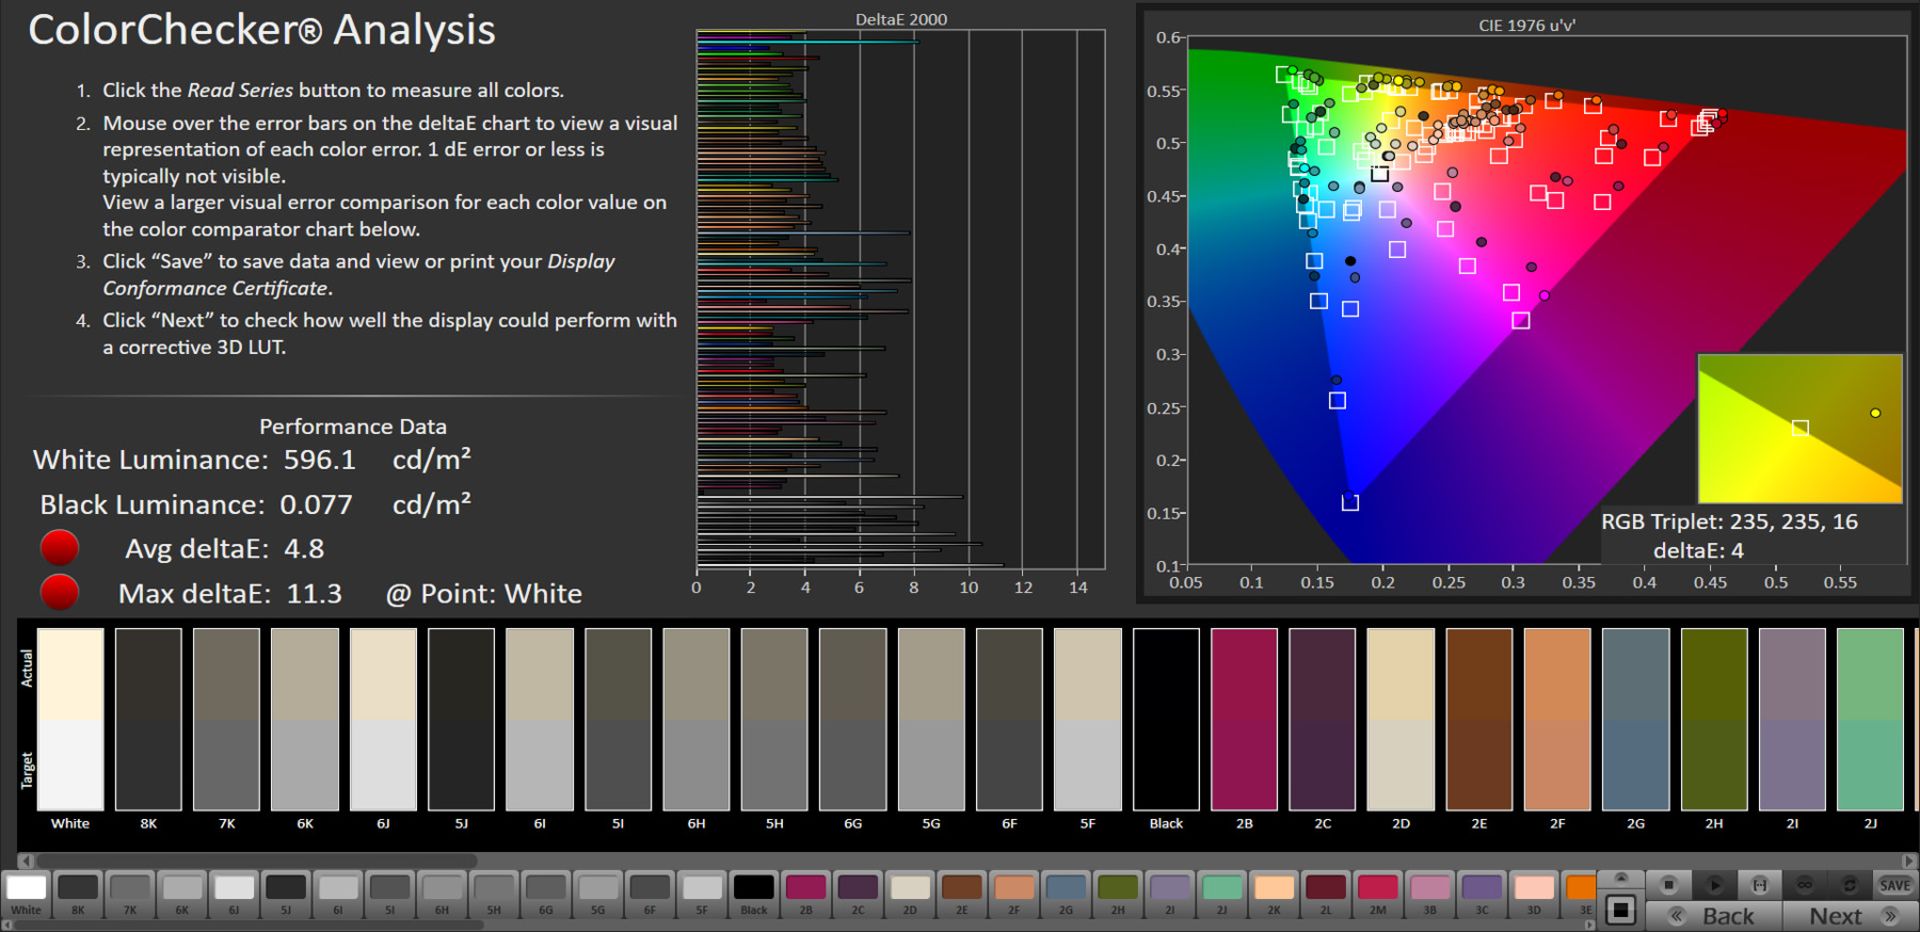 مرجع متخصصين ايران آيفون ۱۲ - آزمايش خطاي رنگ در فضاي رنگ sRGB با فعال بودن True Tone